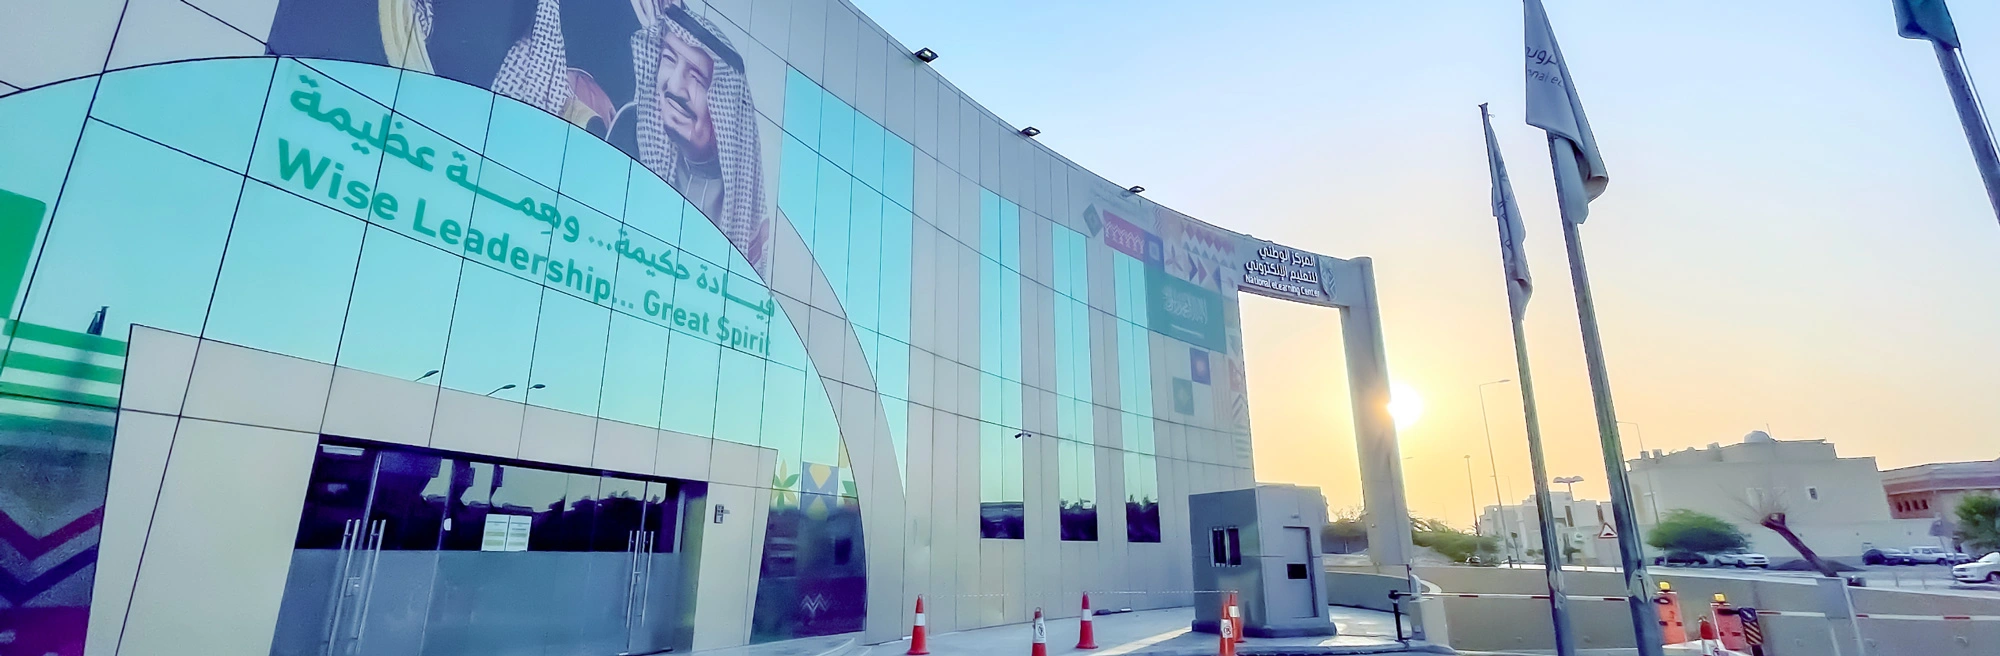 المركز الوطني للتعليم الإلكتروني: نحو تعليم رقمي متكامل في المملكة العربية السعودية 